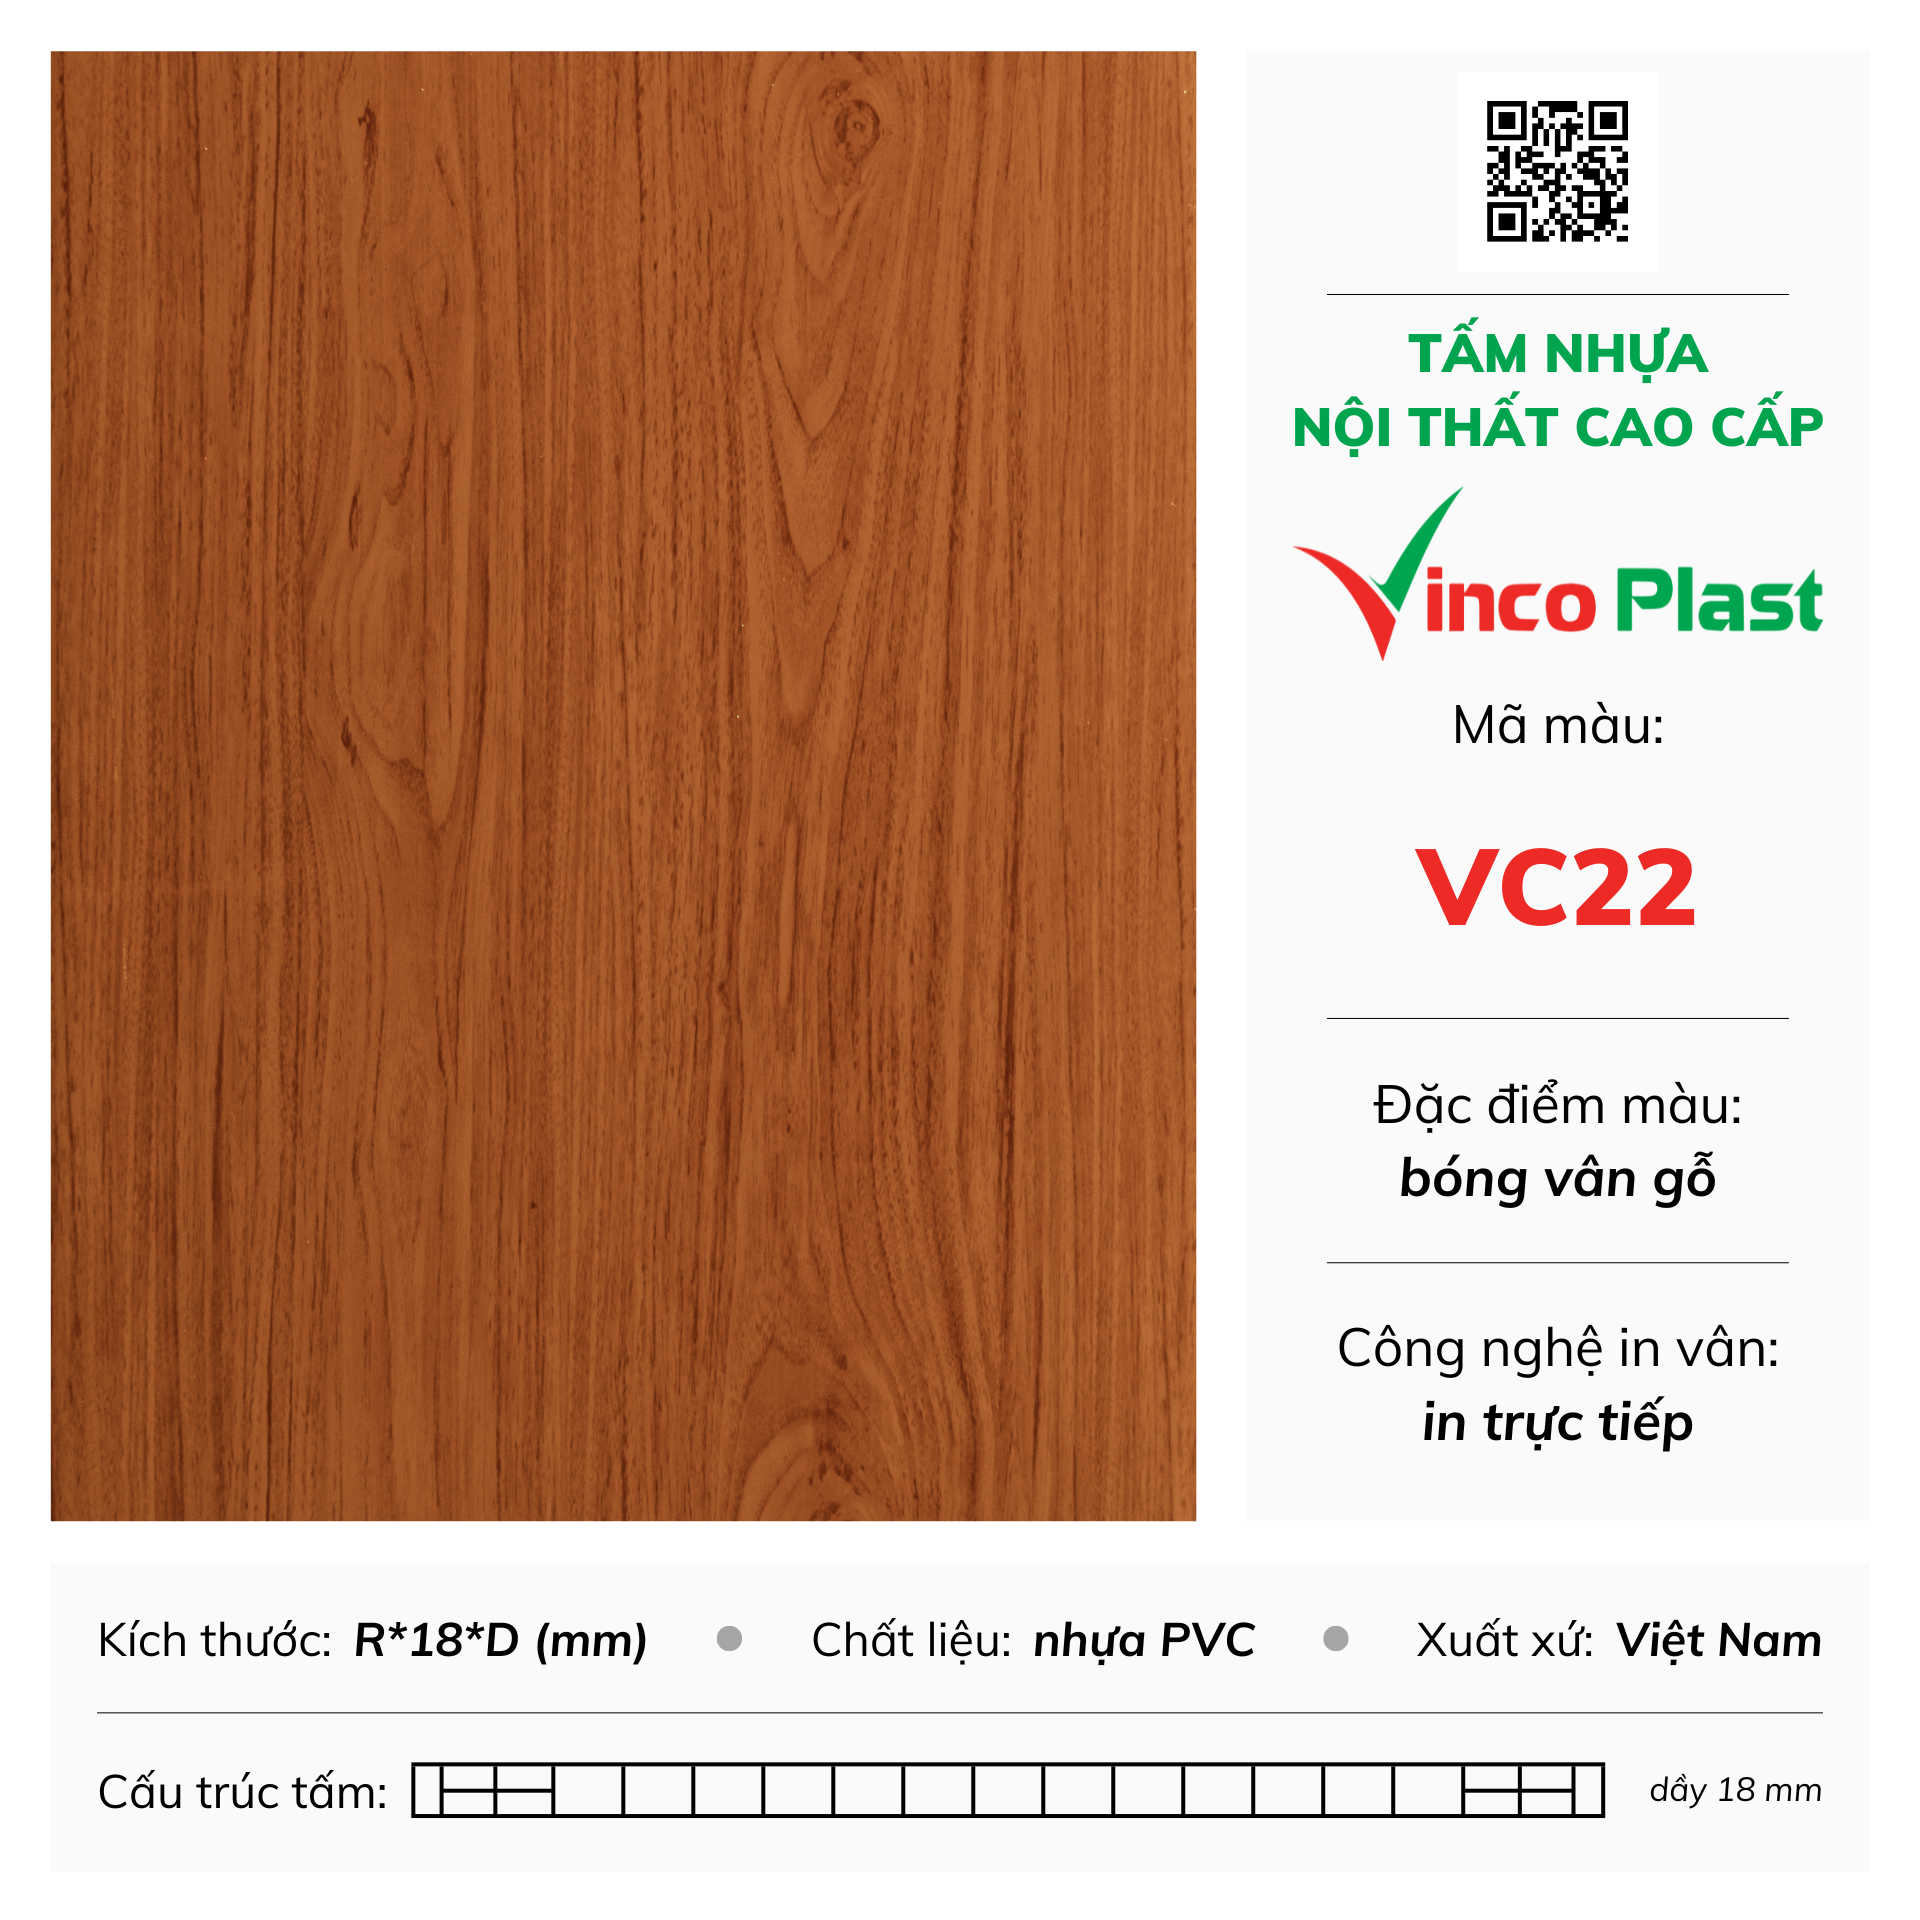 Tấm nhựa nội thất cao cấp Vincoplast màu vc22